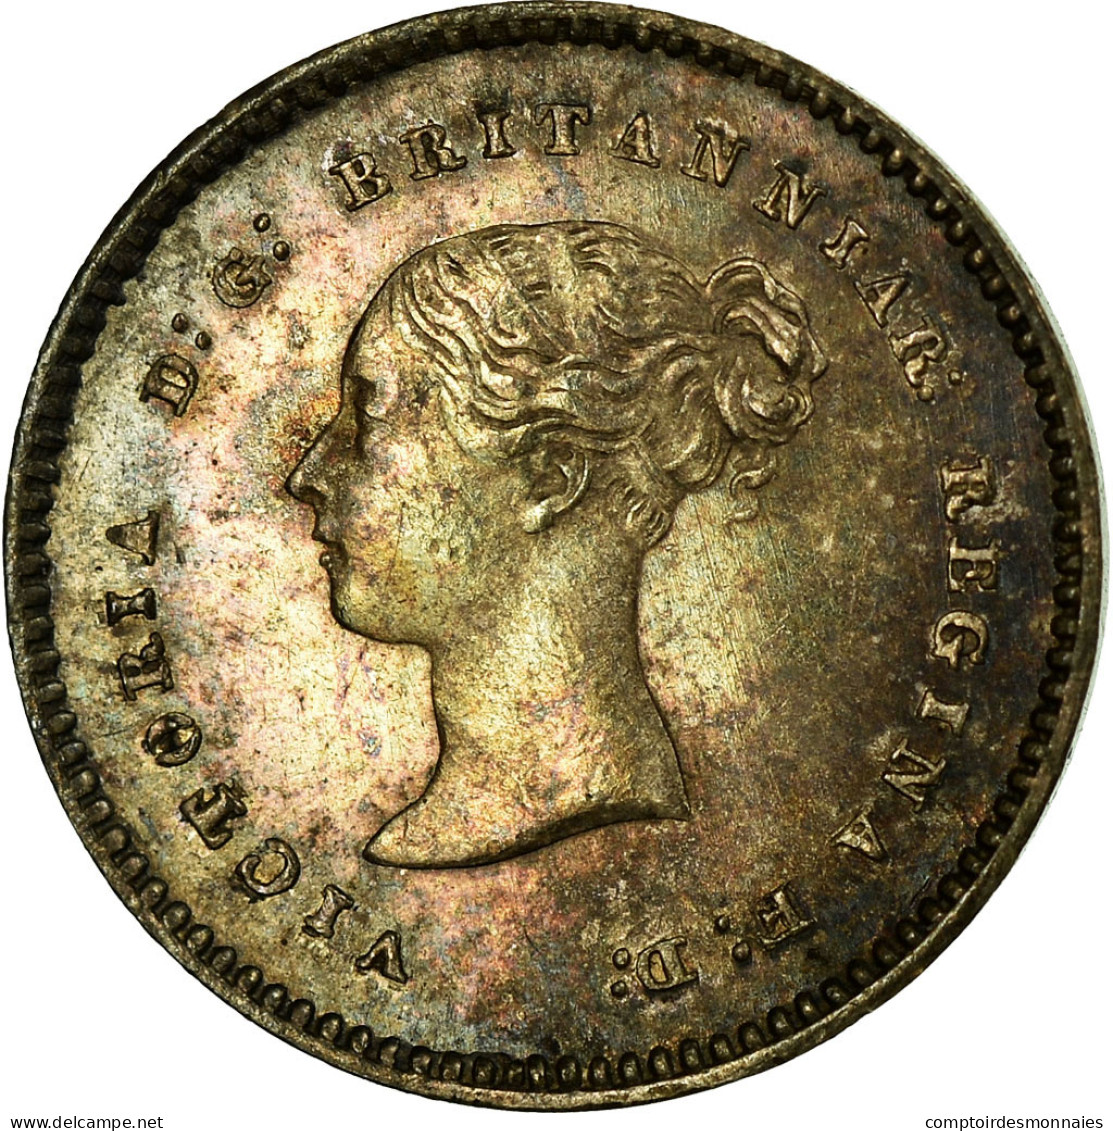 Monnaie, Grande-Bretagne, Victoria, 2 Pence, 1873, SPL, Argent, KM:729 - E. 1 1/2 - 2 Pence